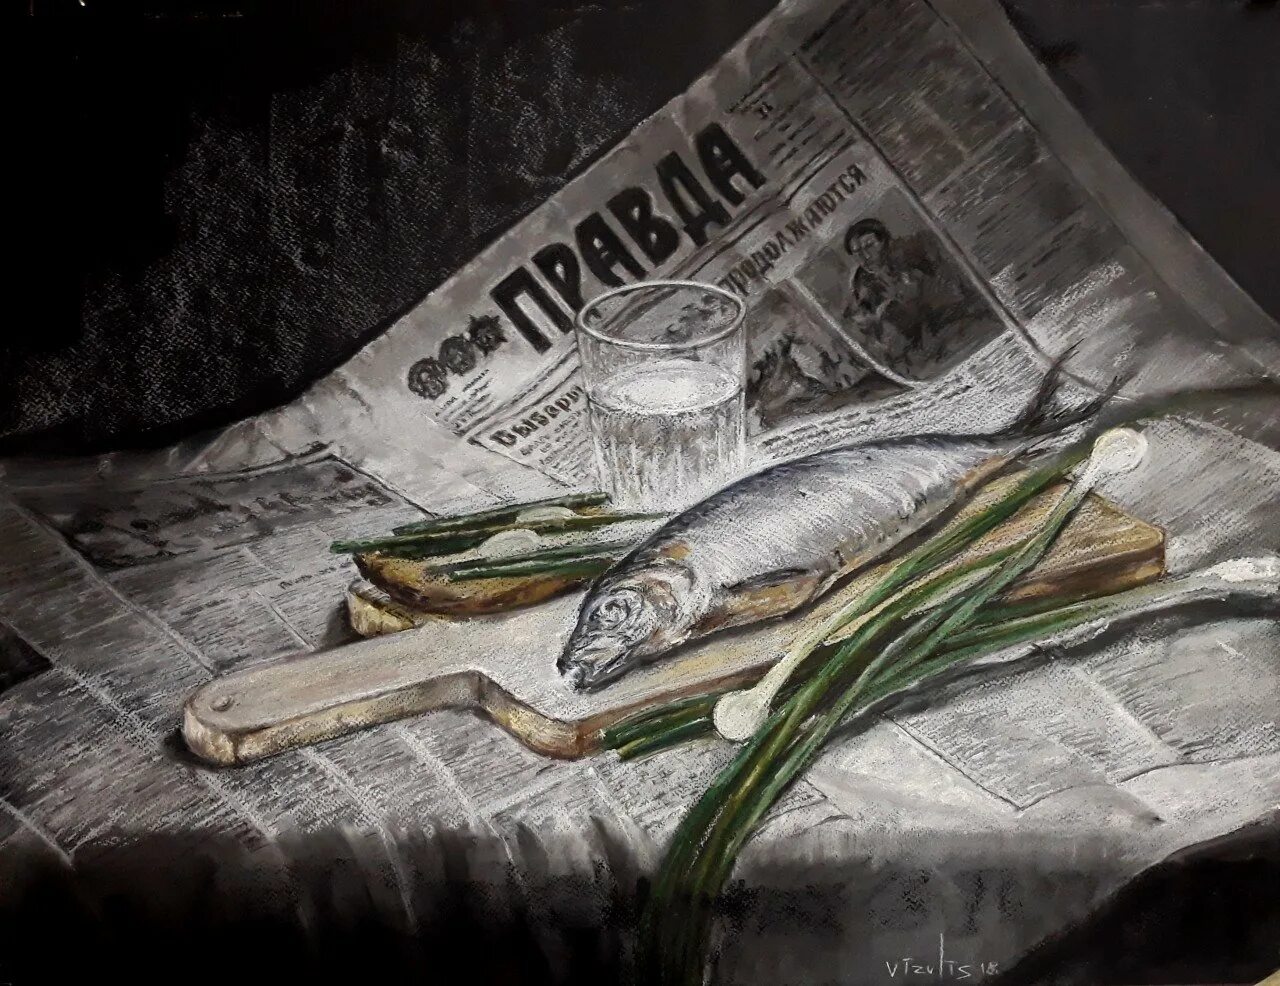 Натюрморт с рыбой. Селедка на газете картина. Натюрморт с рыбой и газетой. Натюрморт с селедкой. Здесь рыбу заворачивали